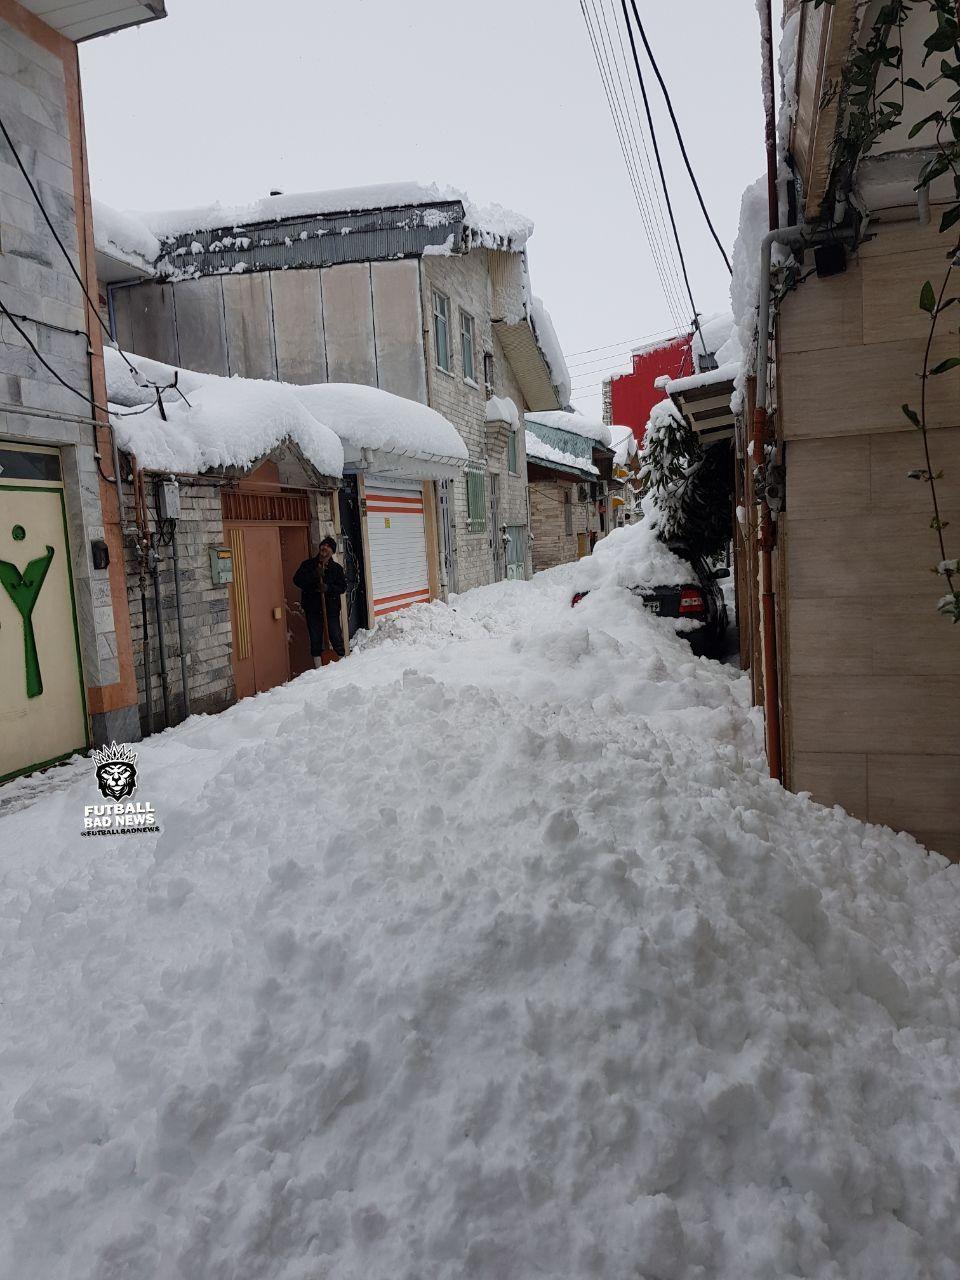 لاهیجان و خلخال در برف مدفون شدند!+ عکس و فیلم